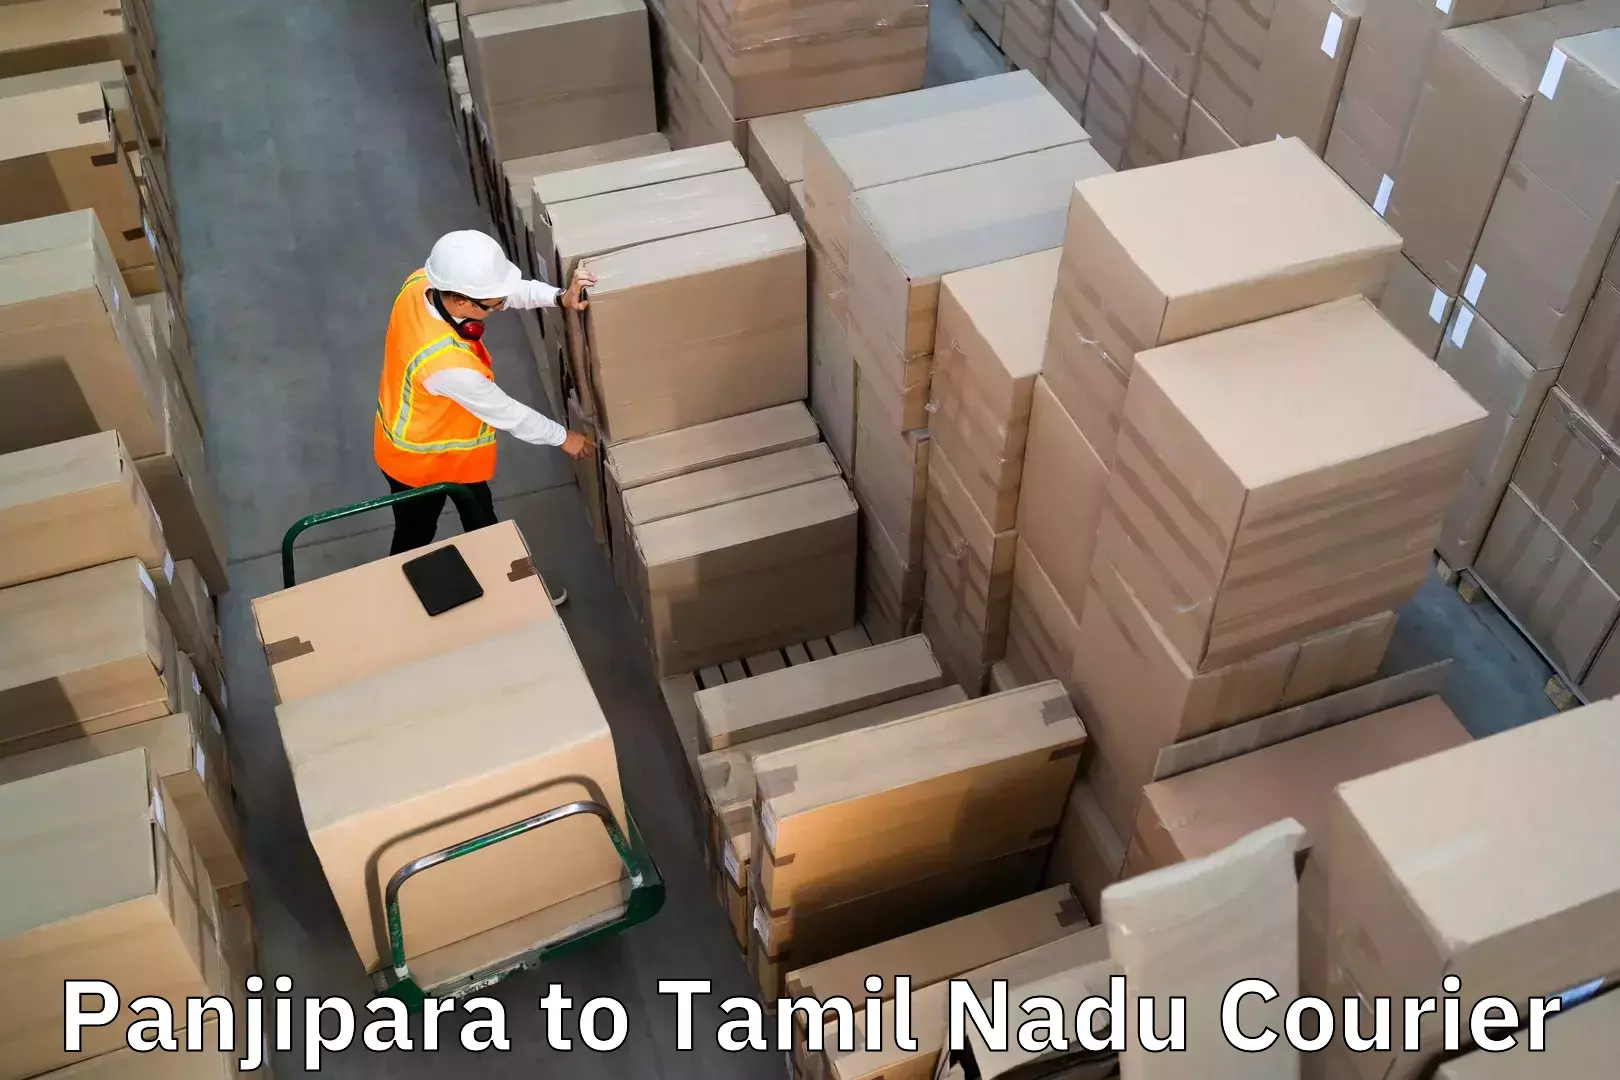 Luggage shipment specialists Panjipara to Manonmaniam Sundaranar University Tirunelveli